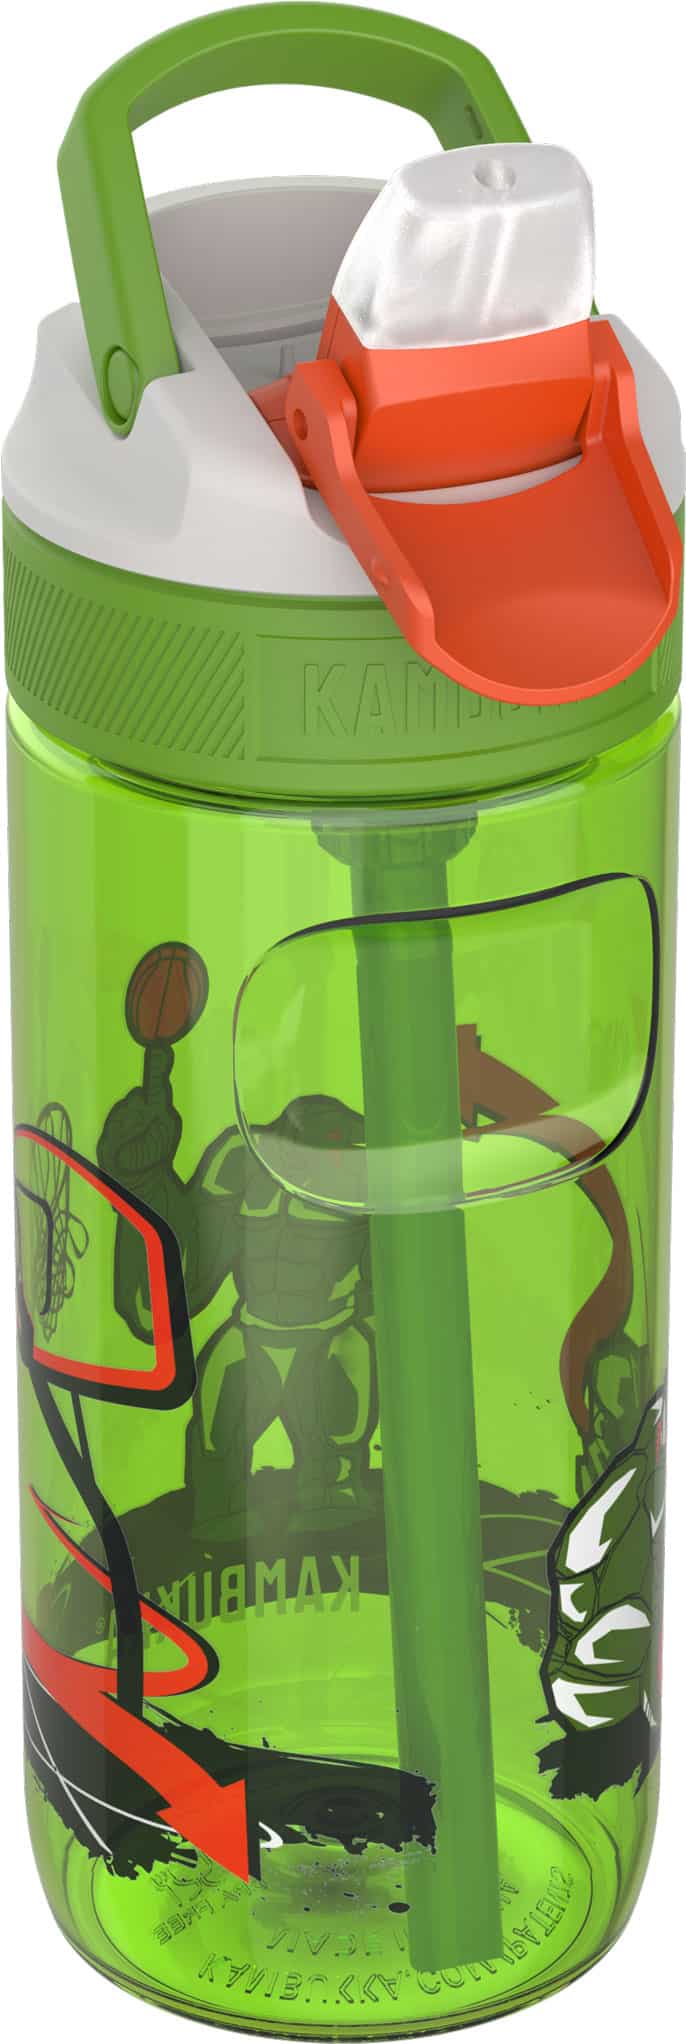 בקבוק שתיה ילדים 500 מ”ל ירוק￼ Kambukka Lagoon Basket Robo קמבוקה￼